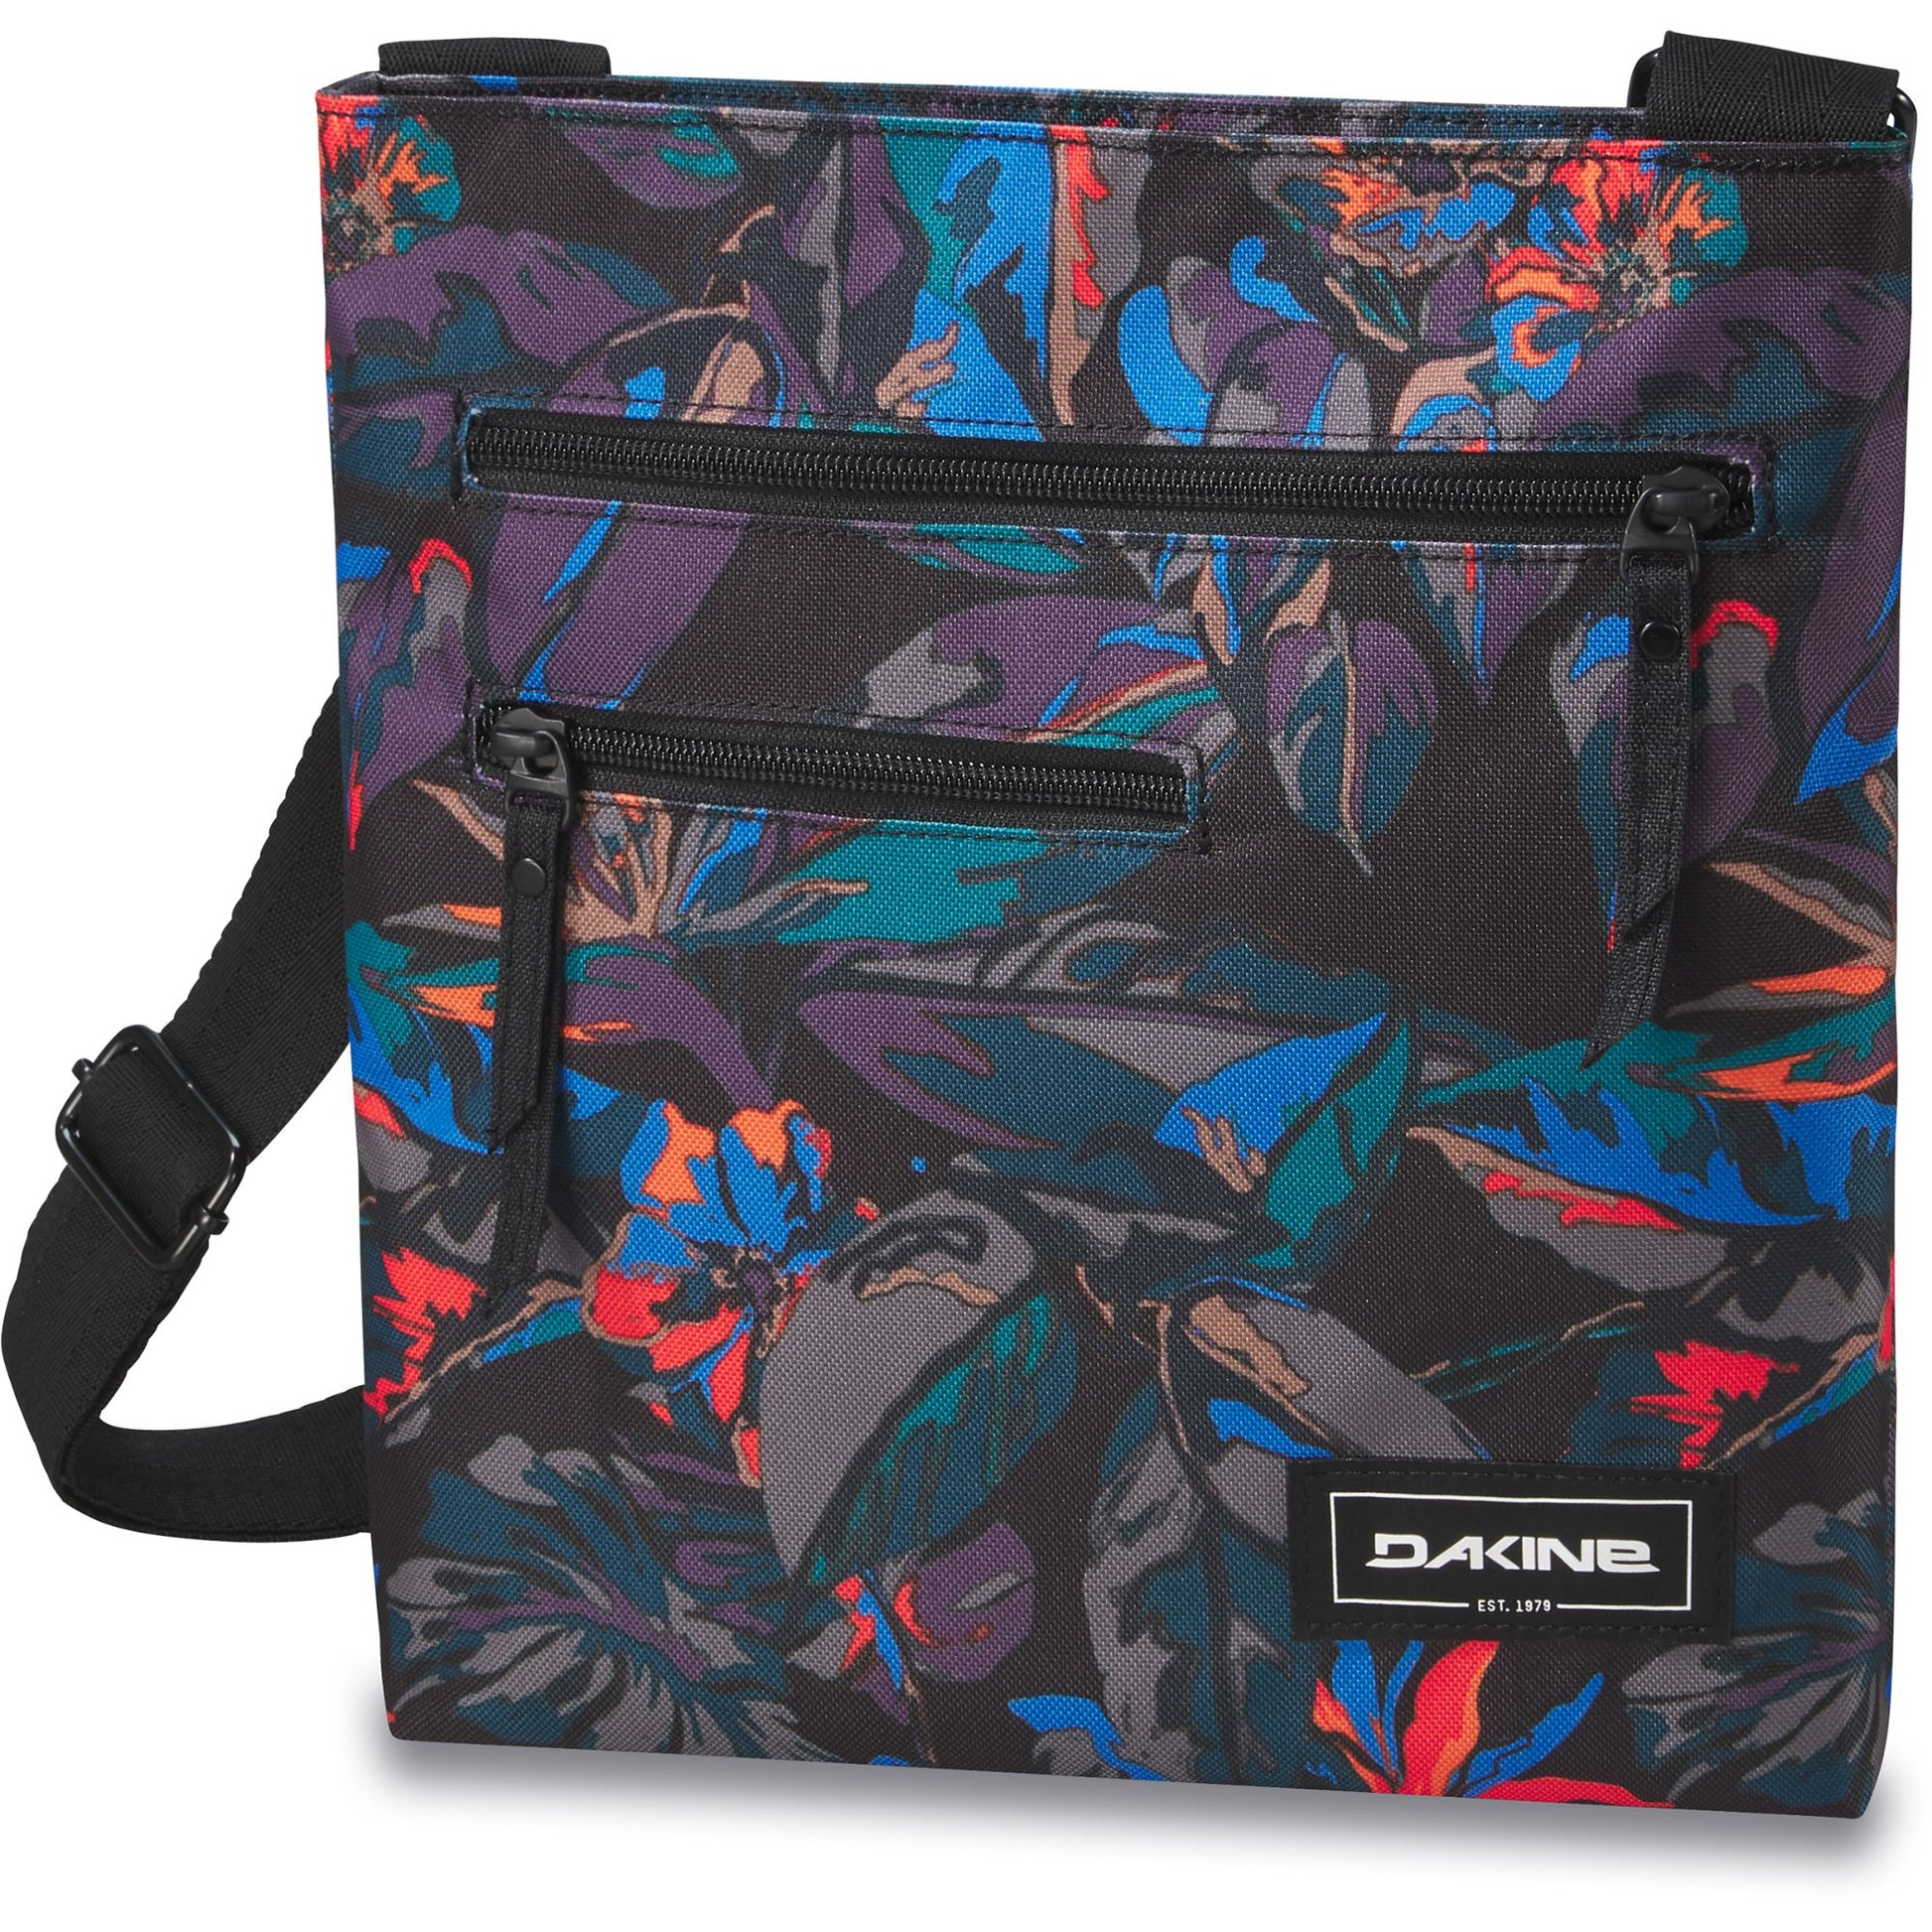 Dakine Jo Jo Bag Tropic Dream OS Bags & Packs